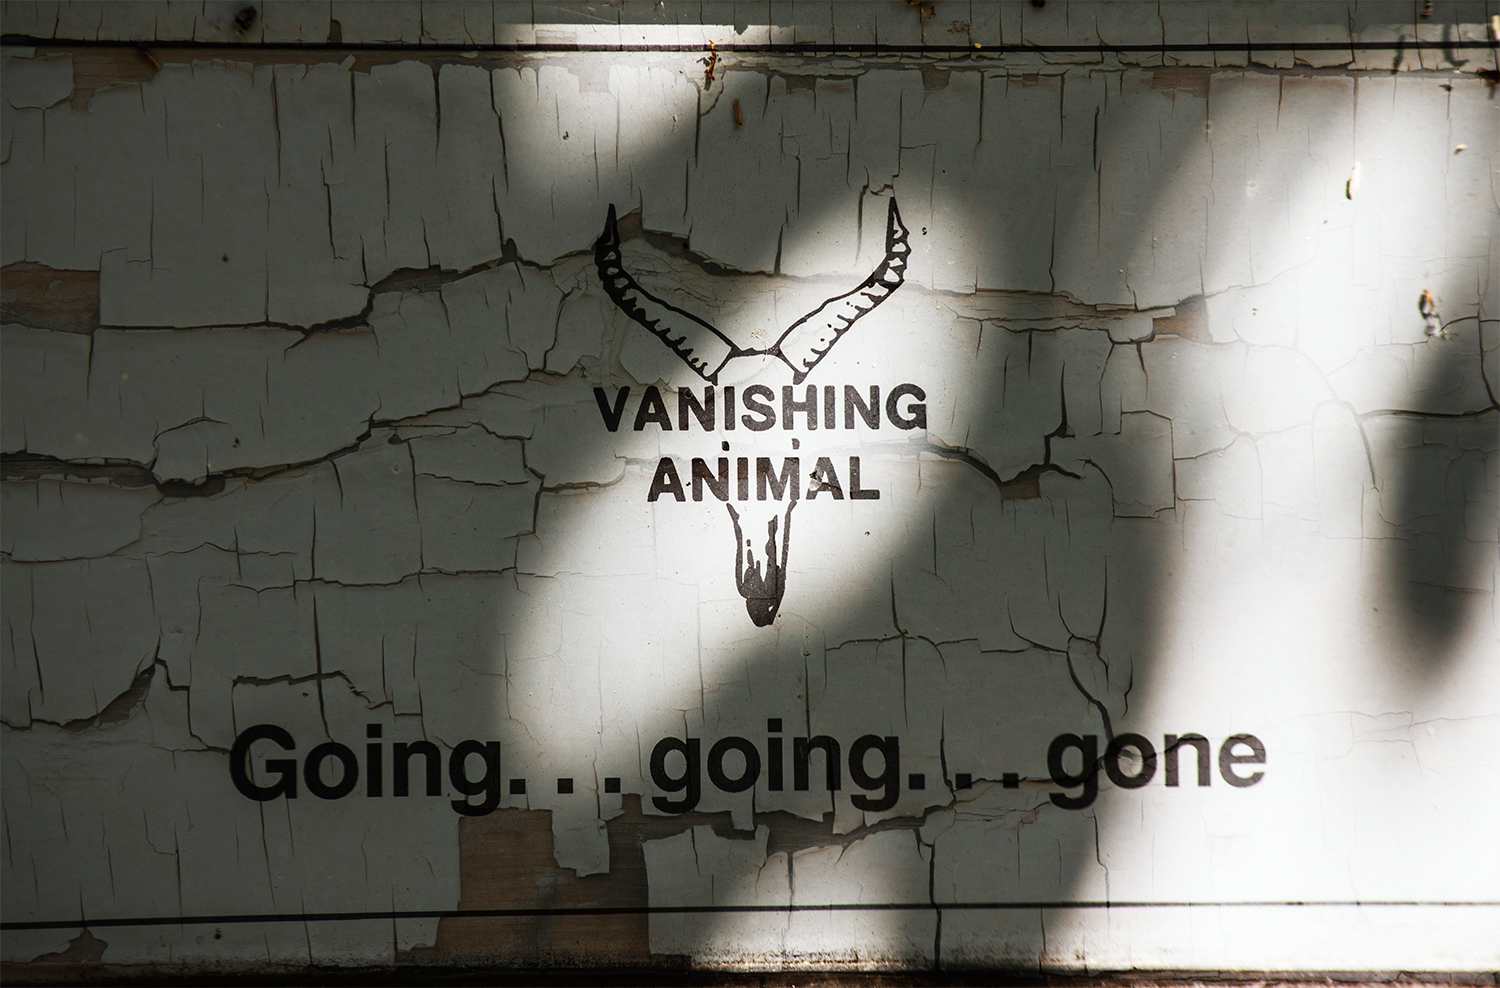 Vanishing animal